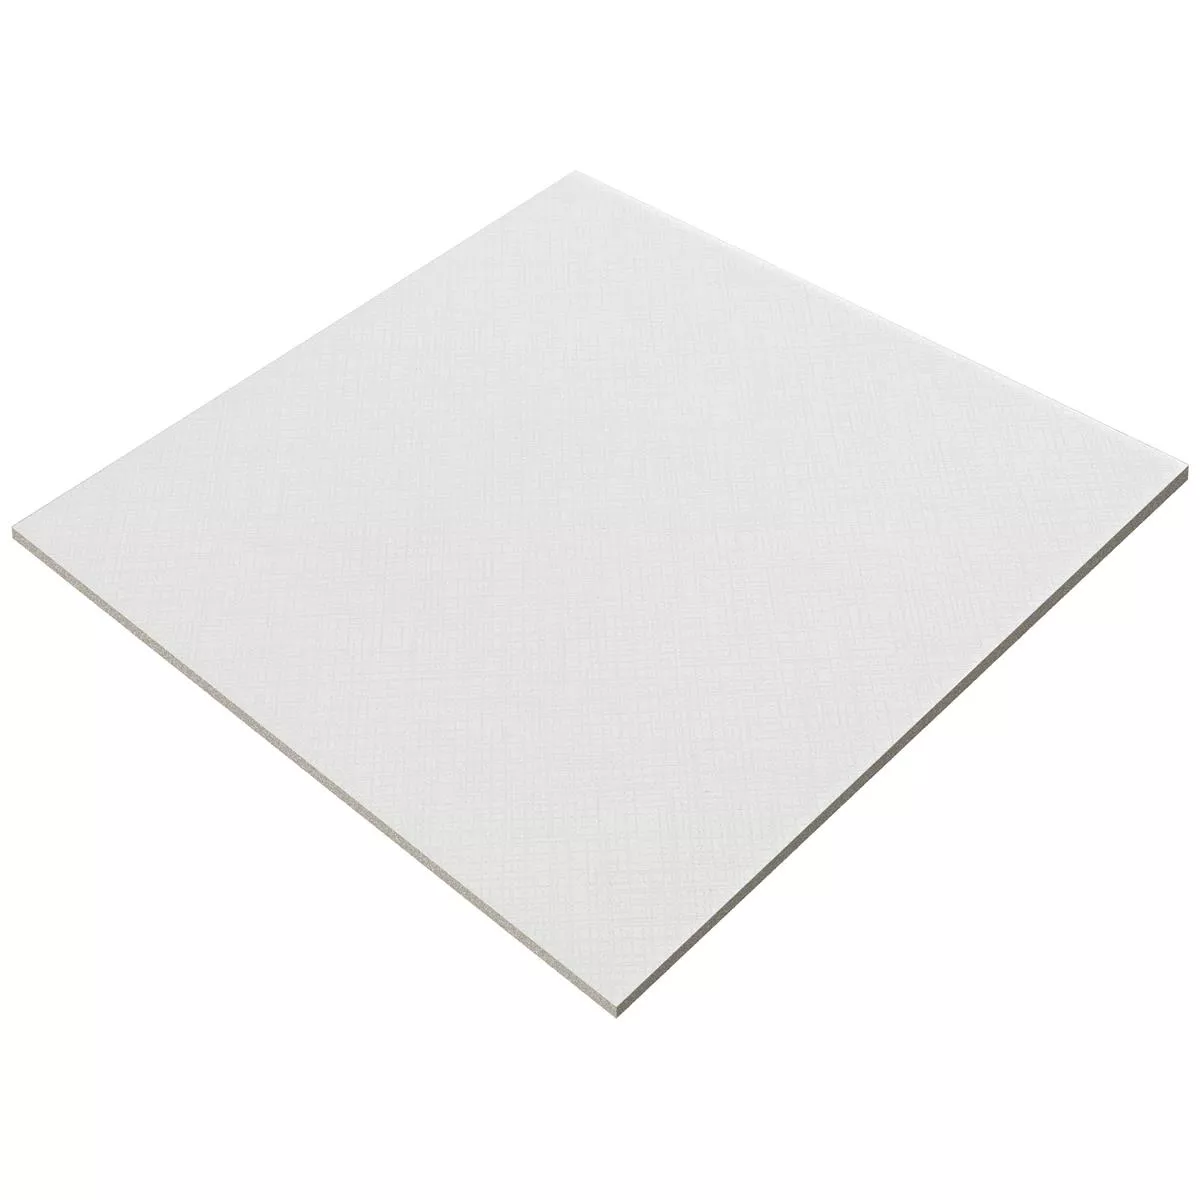 Vzorek Podlahové Dlaždice Cementový Vzhled Wildflower Bílá Základní Dlaždice 18,5x18,5cm